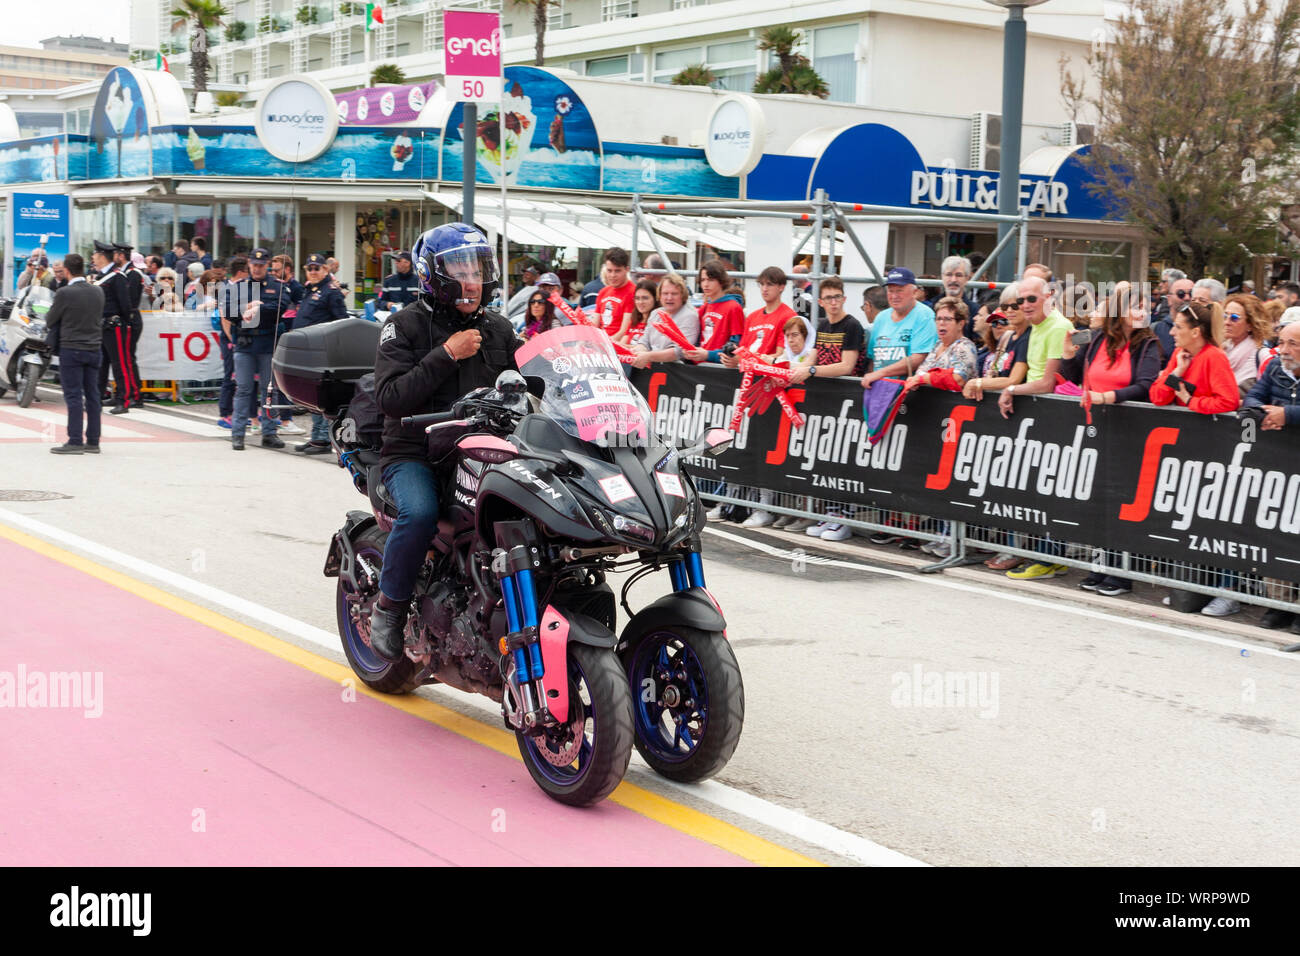 Une moto à la radio déclenche avant neuf de l'étape Tour d'Italie 2019. Riccione, Italie Banque D'Images